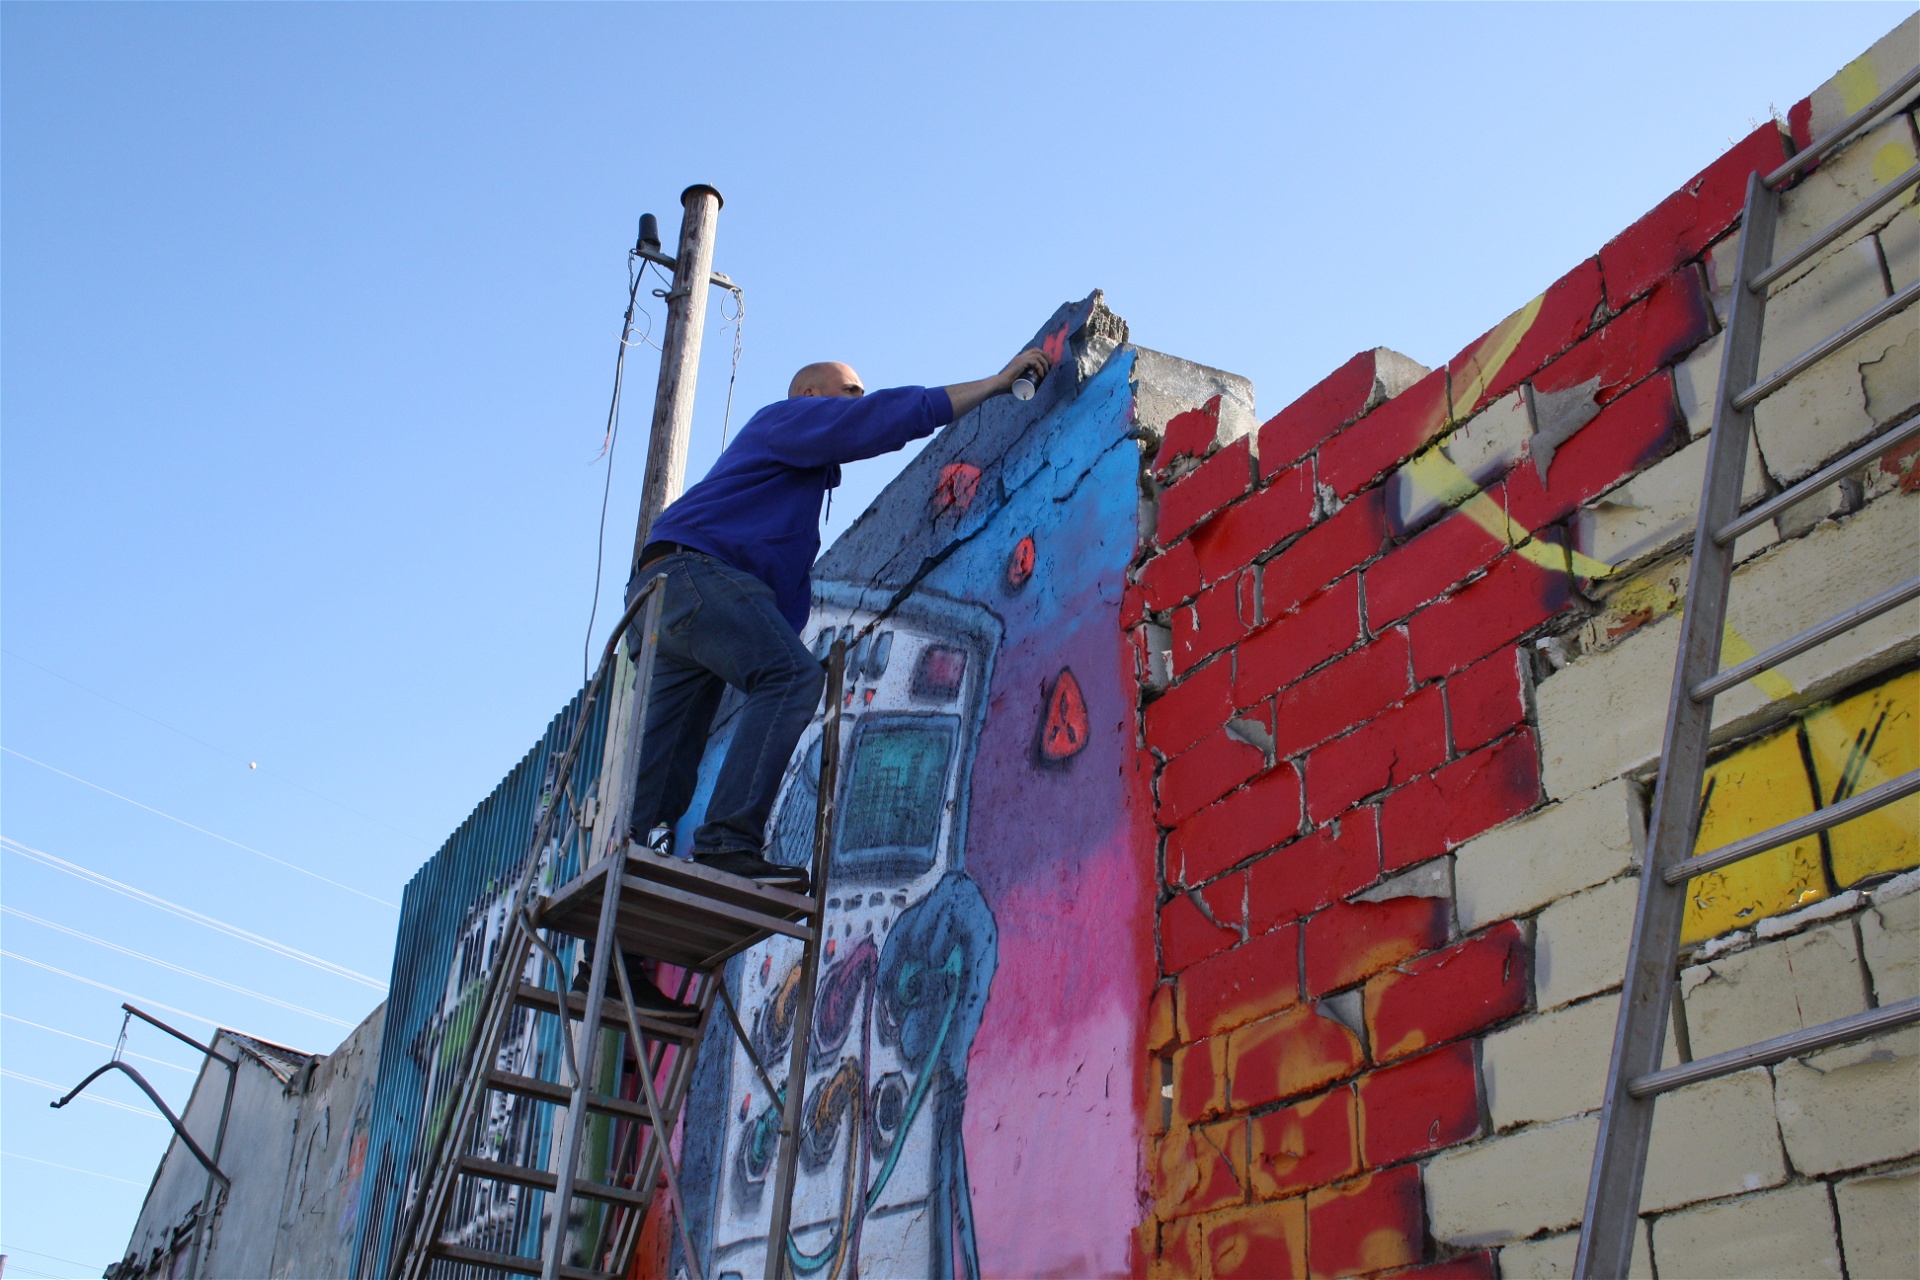 Gatukonstnären Good mood målar en väggmålning på graffitifestivalen Spring Beast i Snösätra.